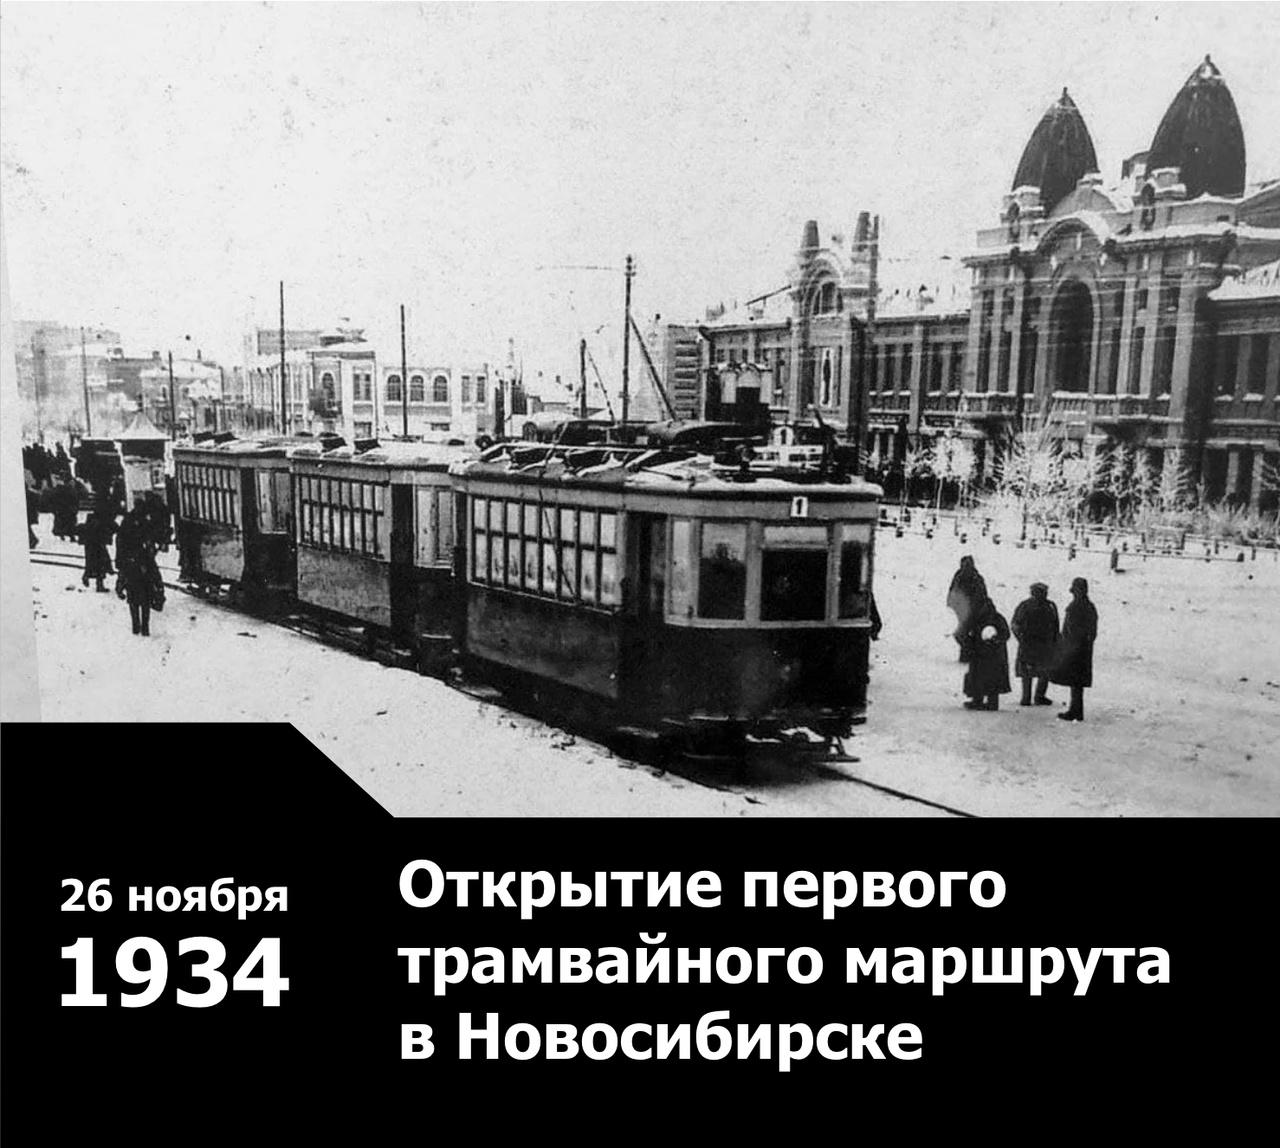 Водитель трамвая новосибирск. Новосибирский трамвай. Первый трамвай. Первый трамвай в Новосибирске. Новосибирский трамвай ретро.